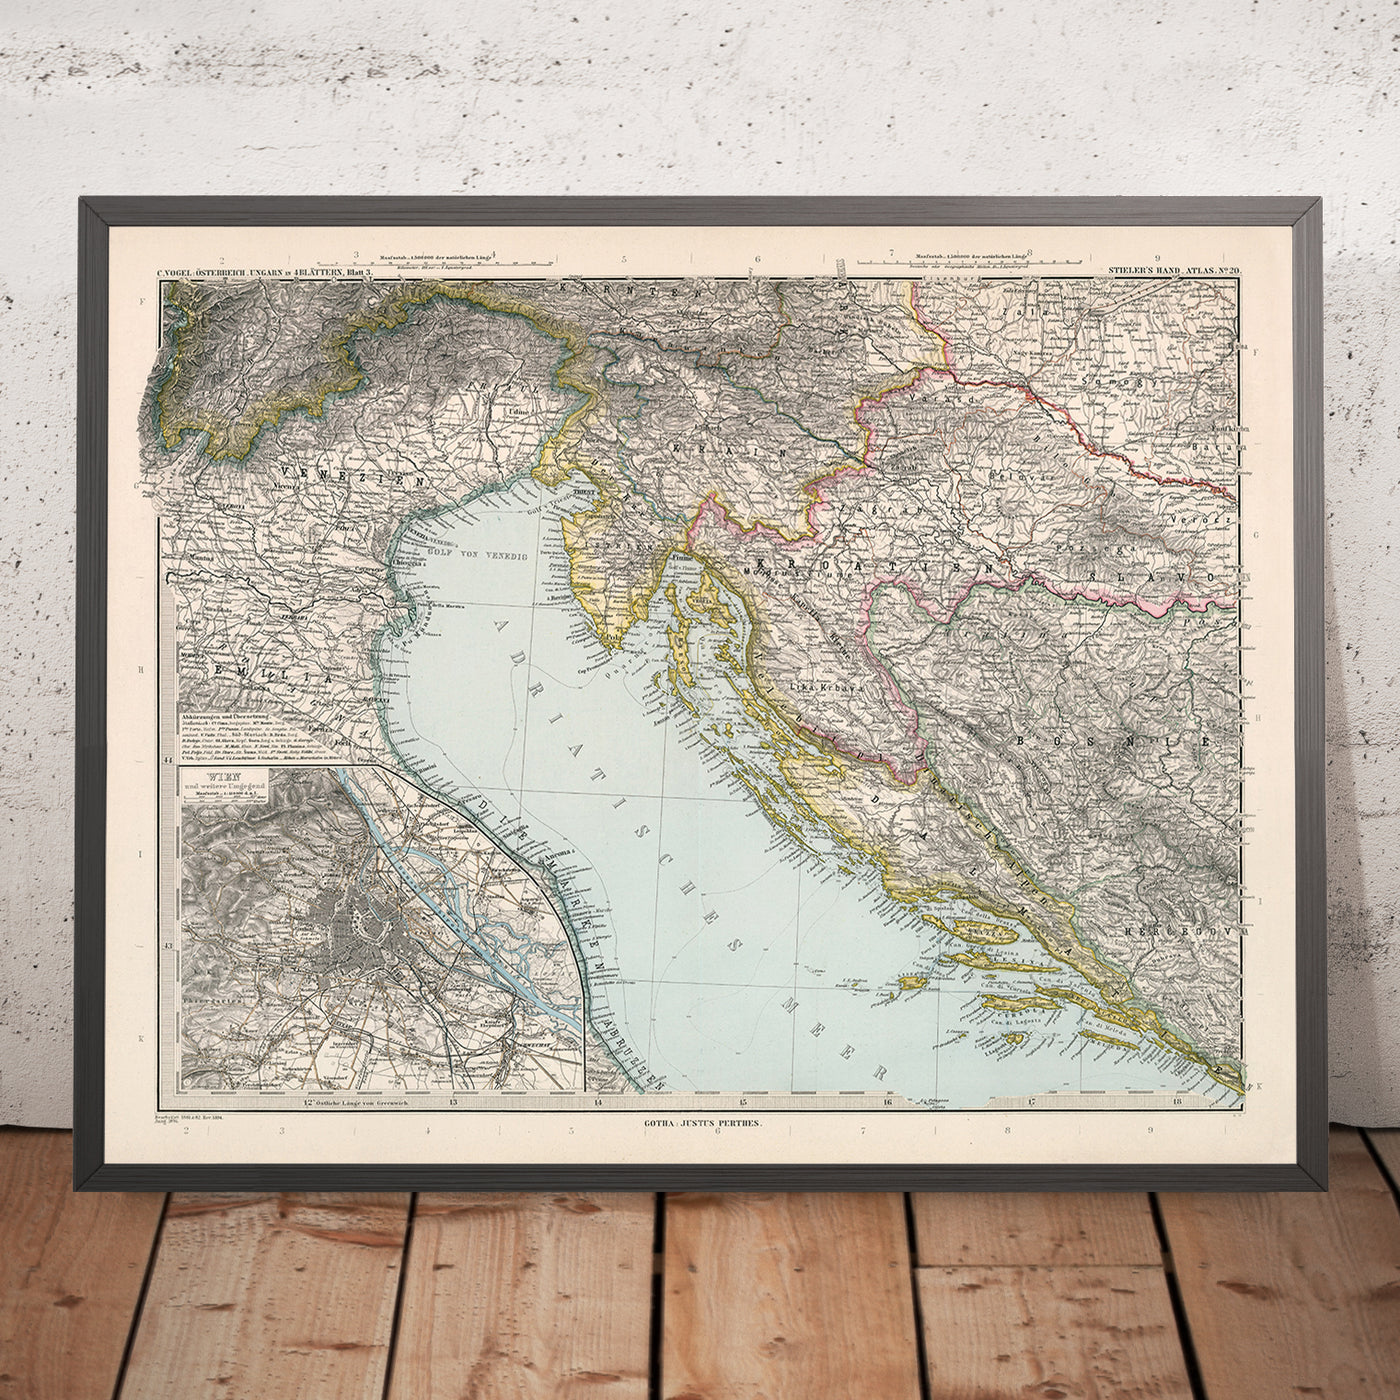 Alte Karte von Kroatien und Bosnien von Adolf Stieler, 1894: Adria, die dalmatinische Küste und das Velebit-Gebirge